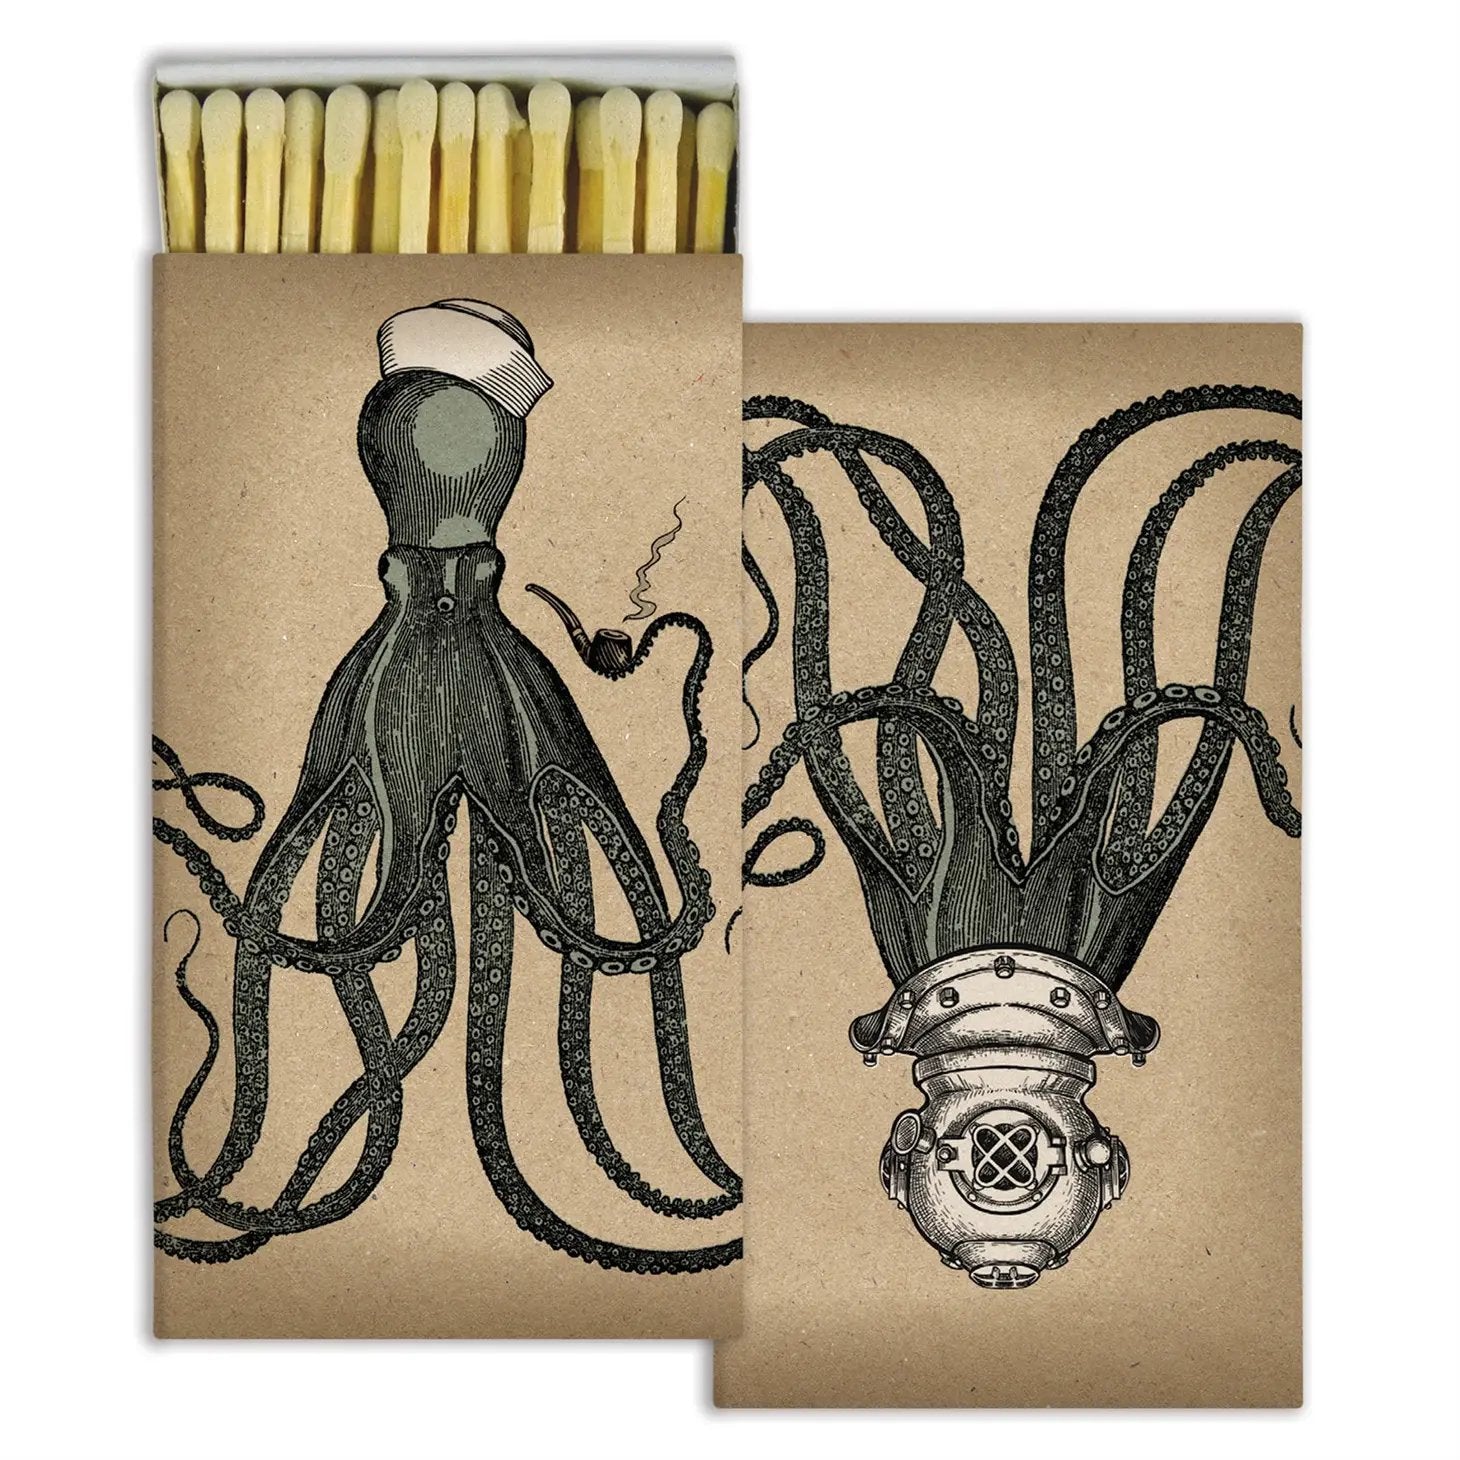 Octopus Matches - Matches